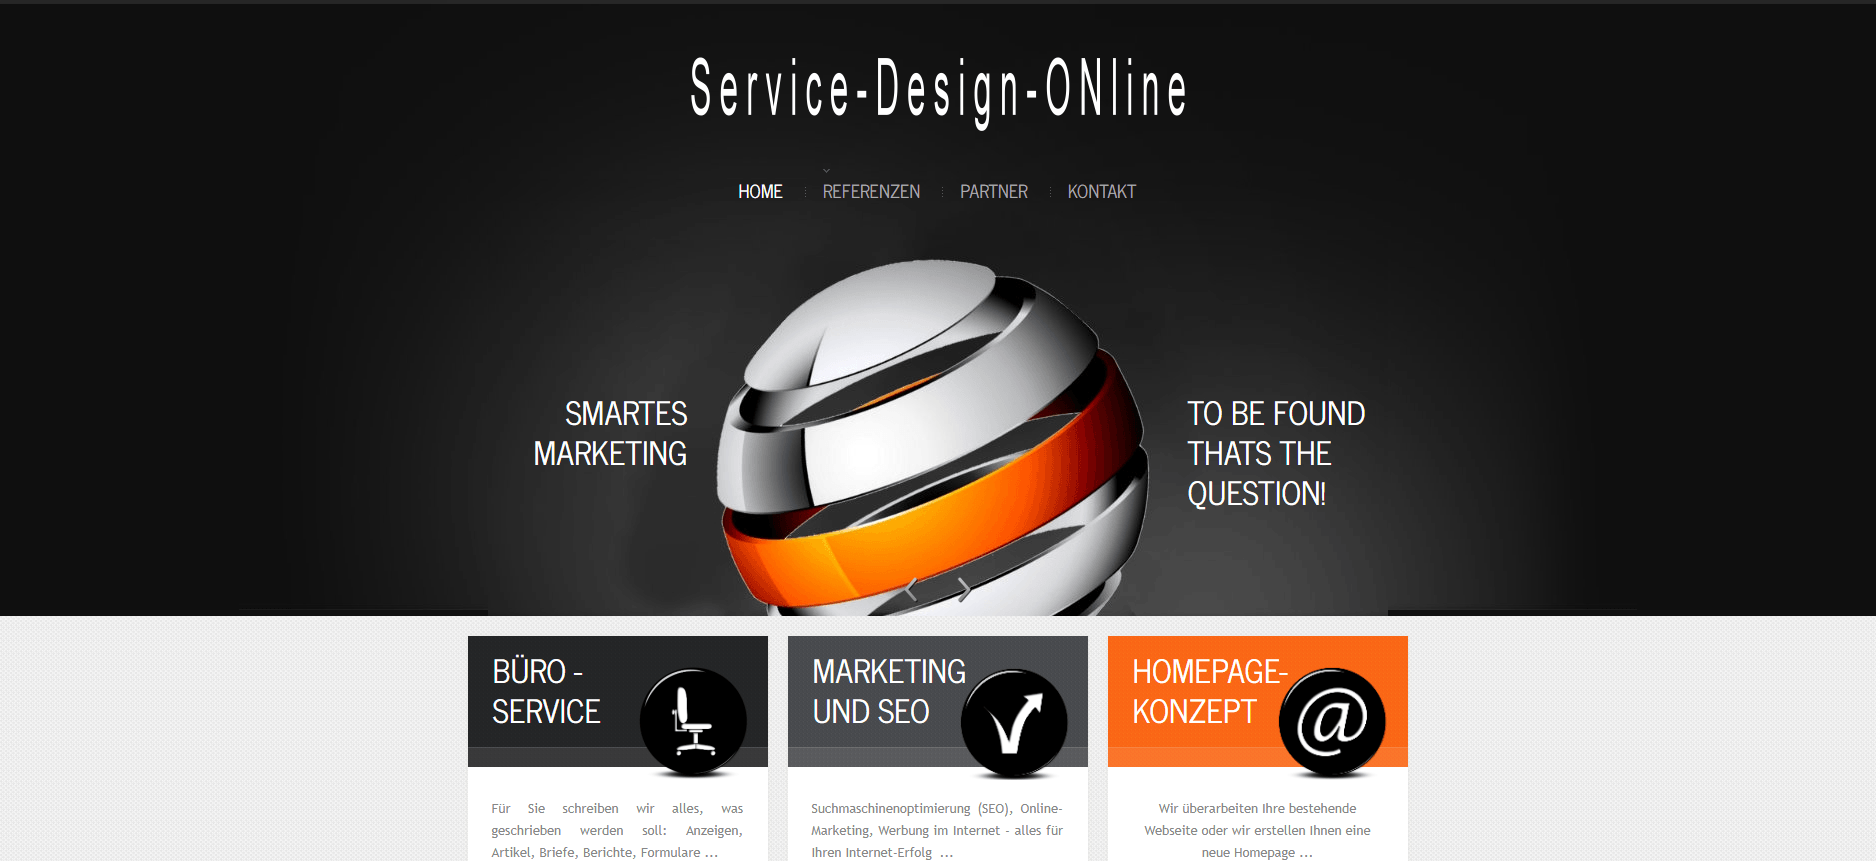 Über Service-Design-Online, Ihrem Spezialist für Webseiten-Überarbeitung